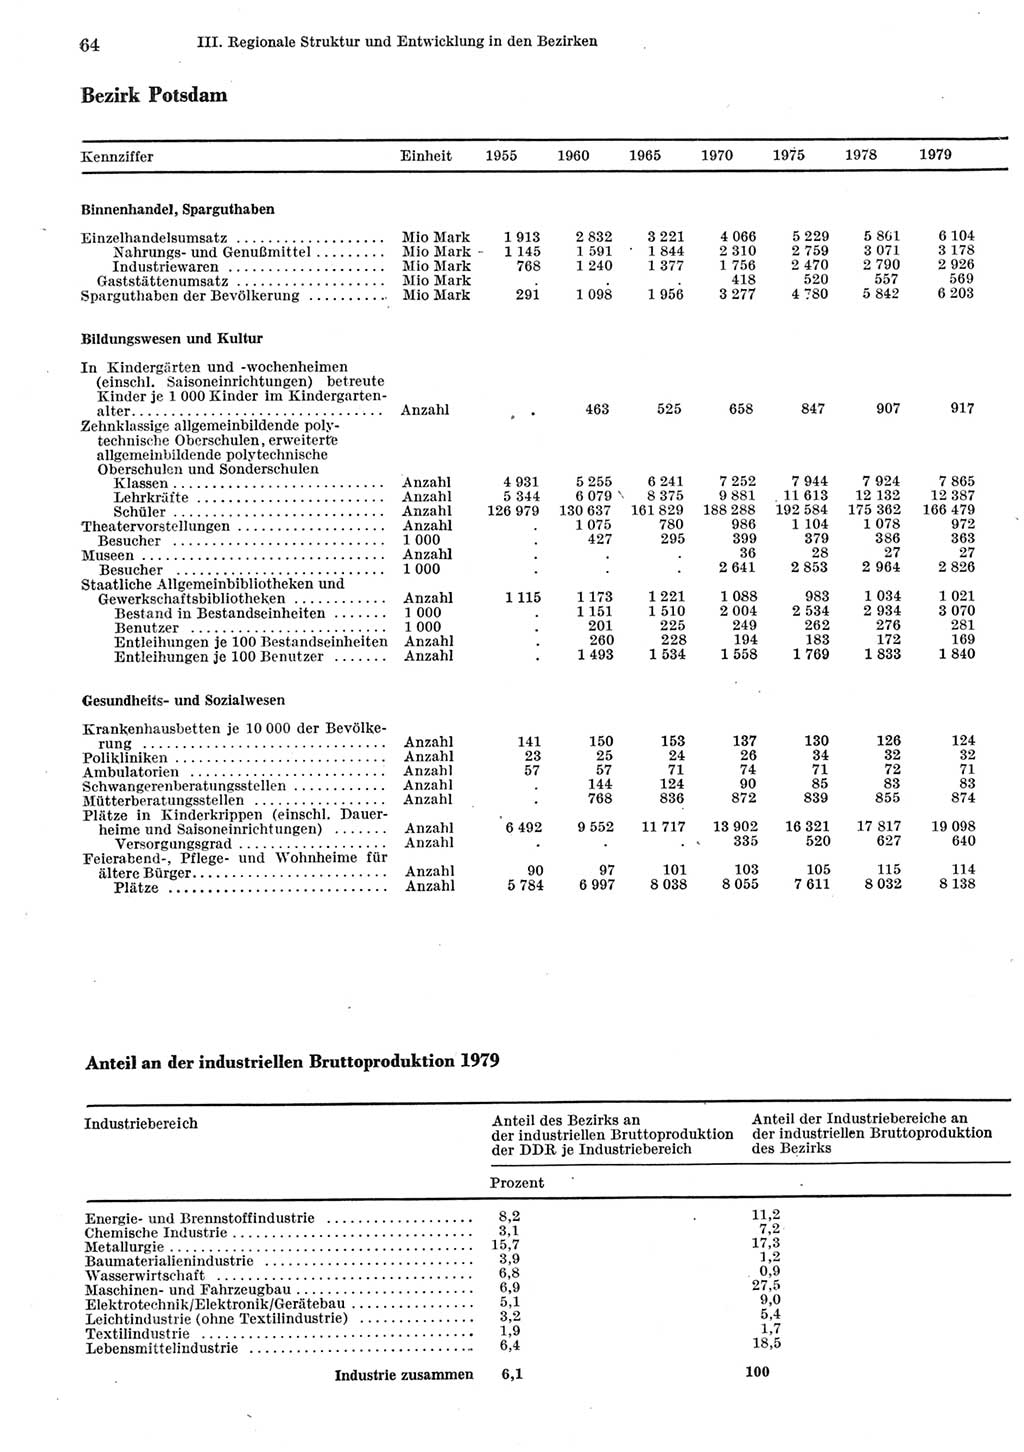 Statistisches Jahrbuch der Deutschen Demokratischen Republik (DDR) 1980, Seite 64 (Stat. Jb. DDR 1980, S. 64)